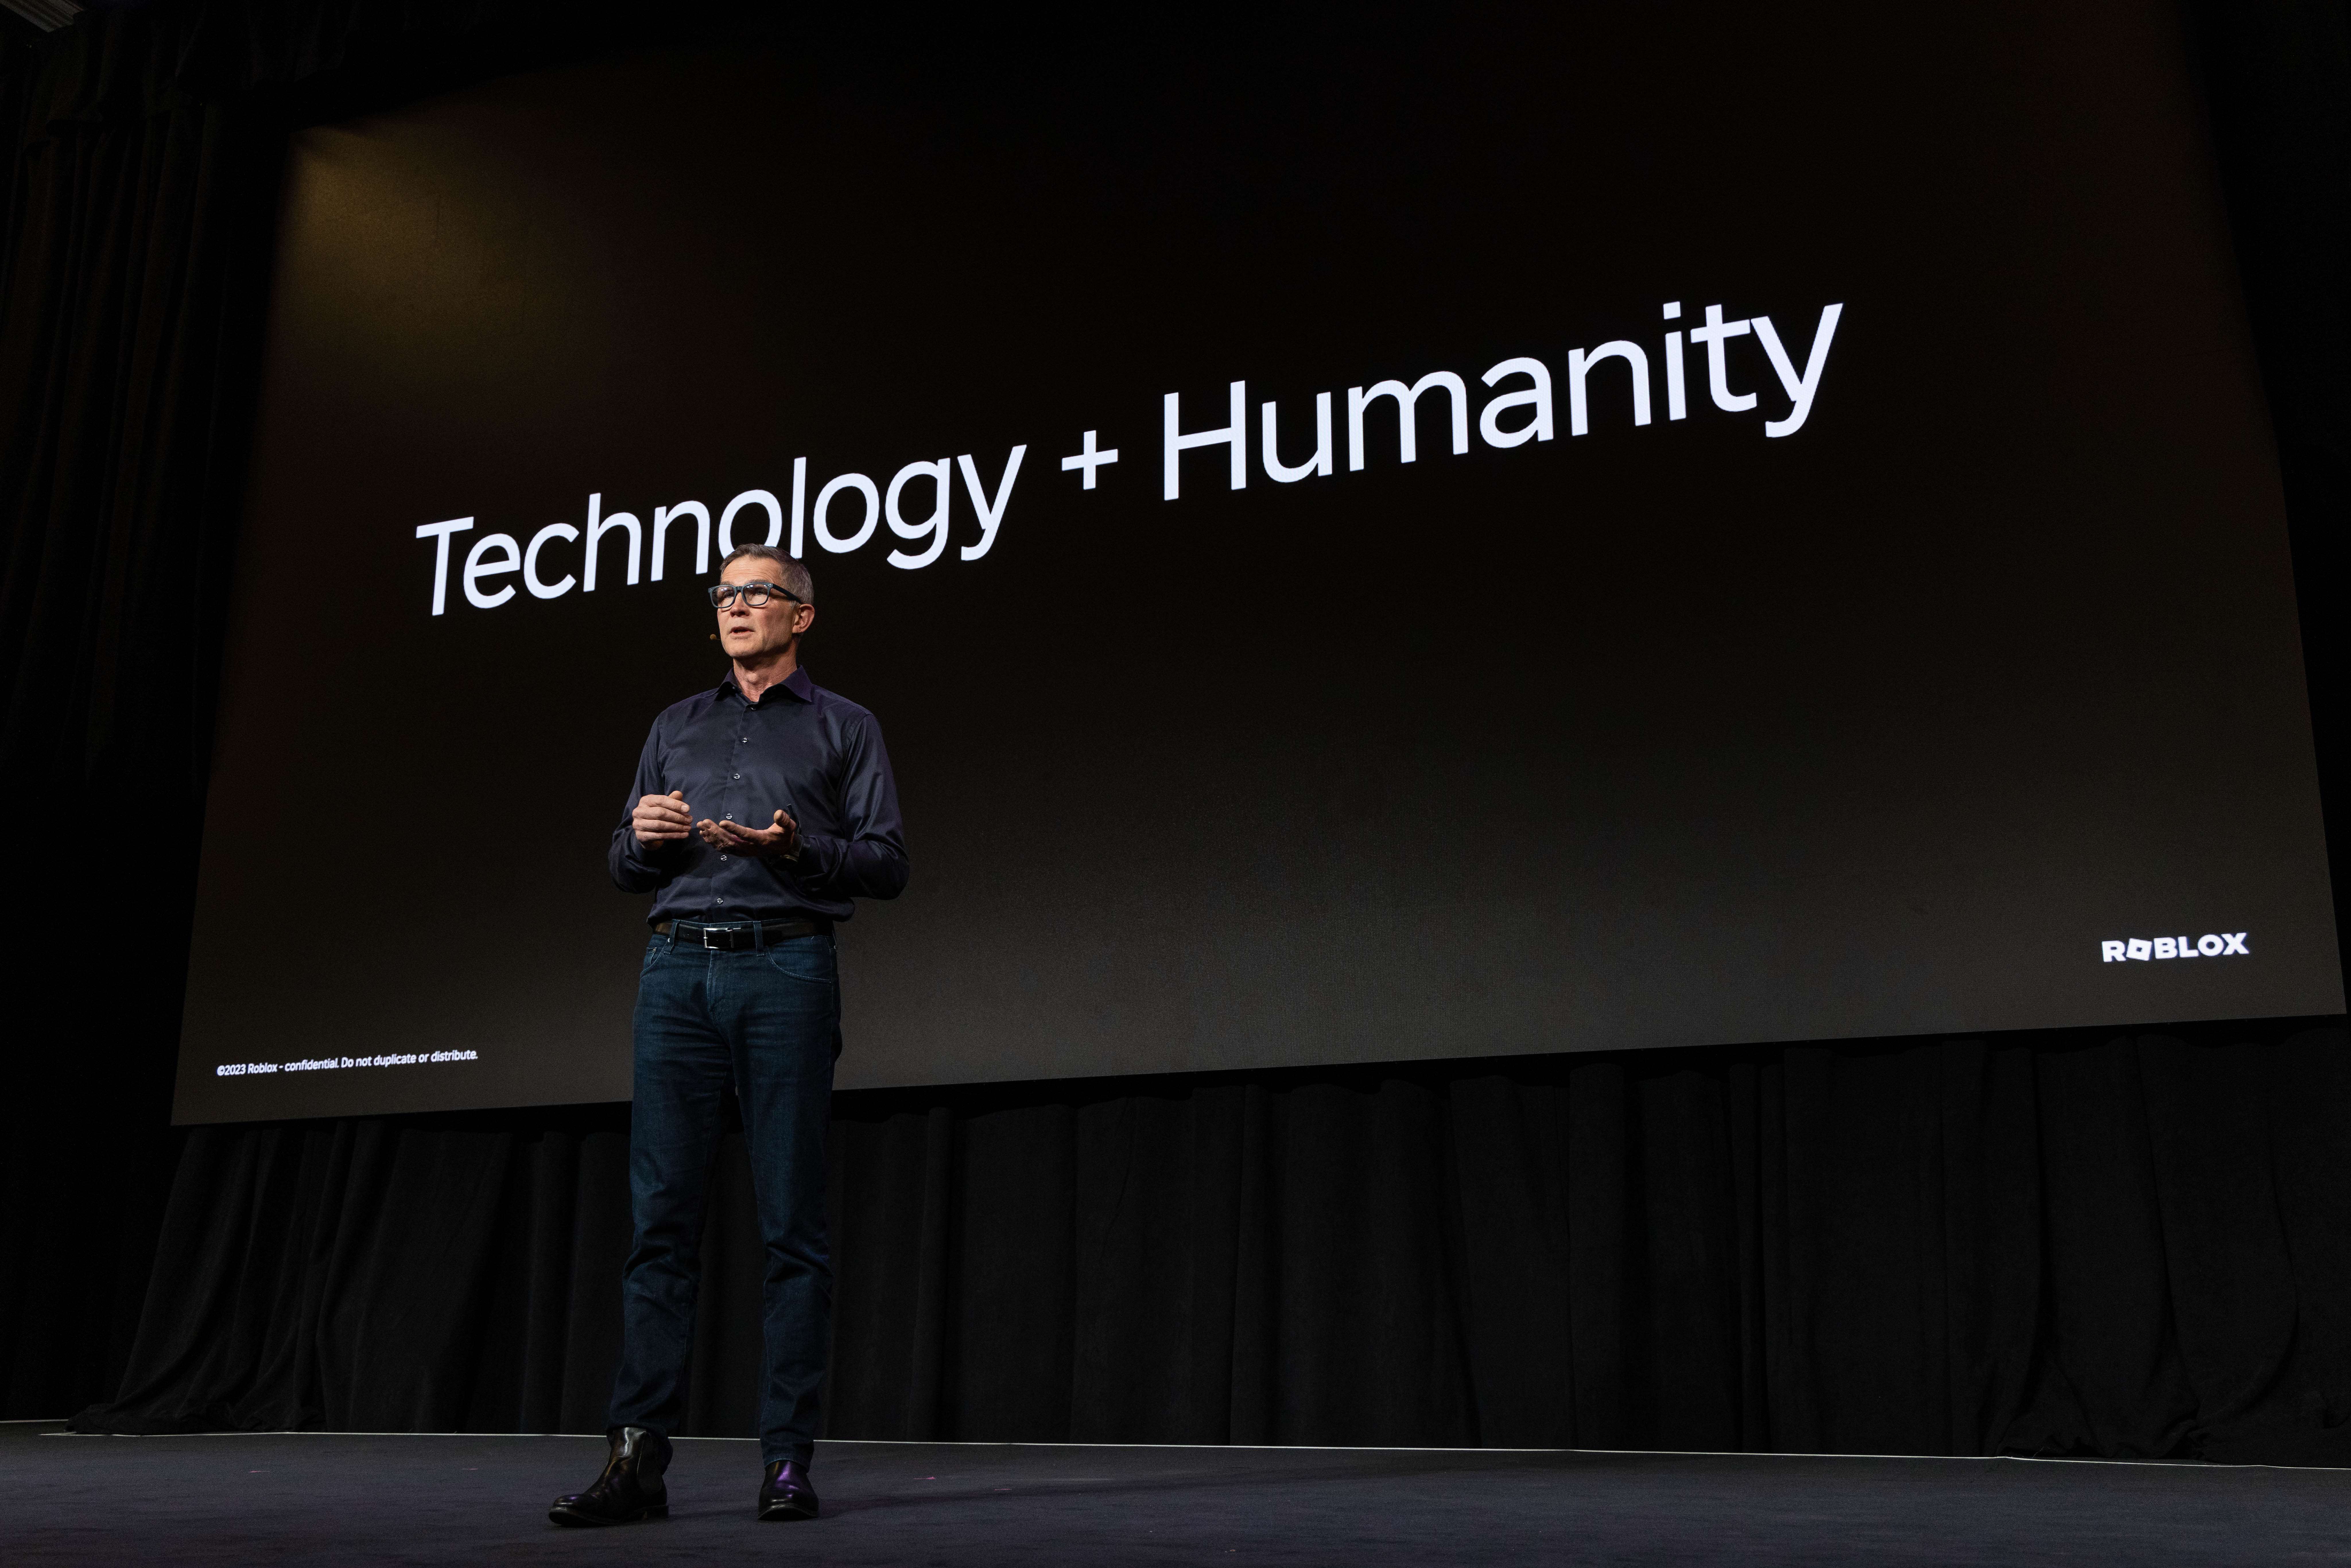 เดวิดยืนอยู่บนเวทีหน้าสไลด์ที่เขียนว่า เทคโนโลยี + มนุษยชาติ